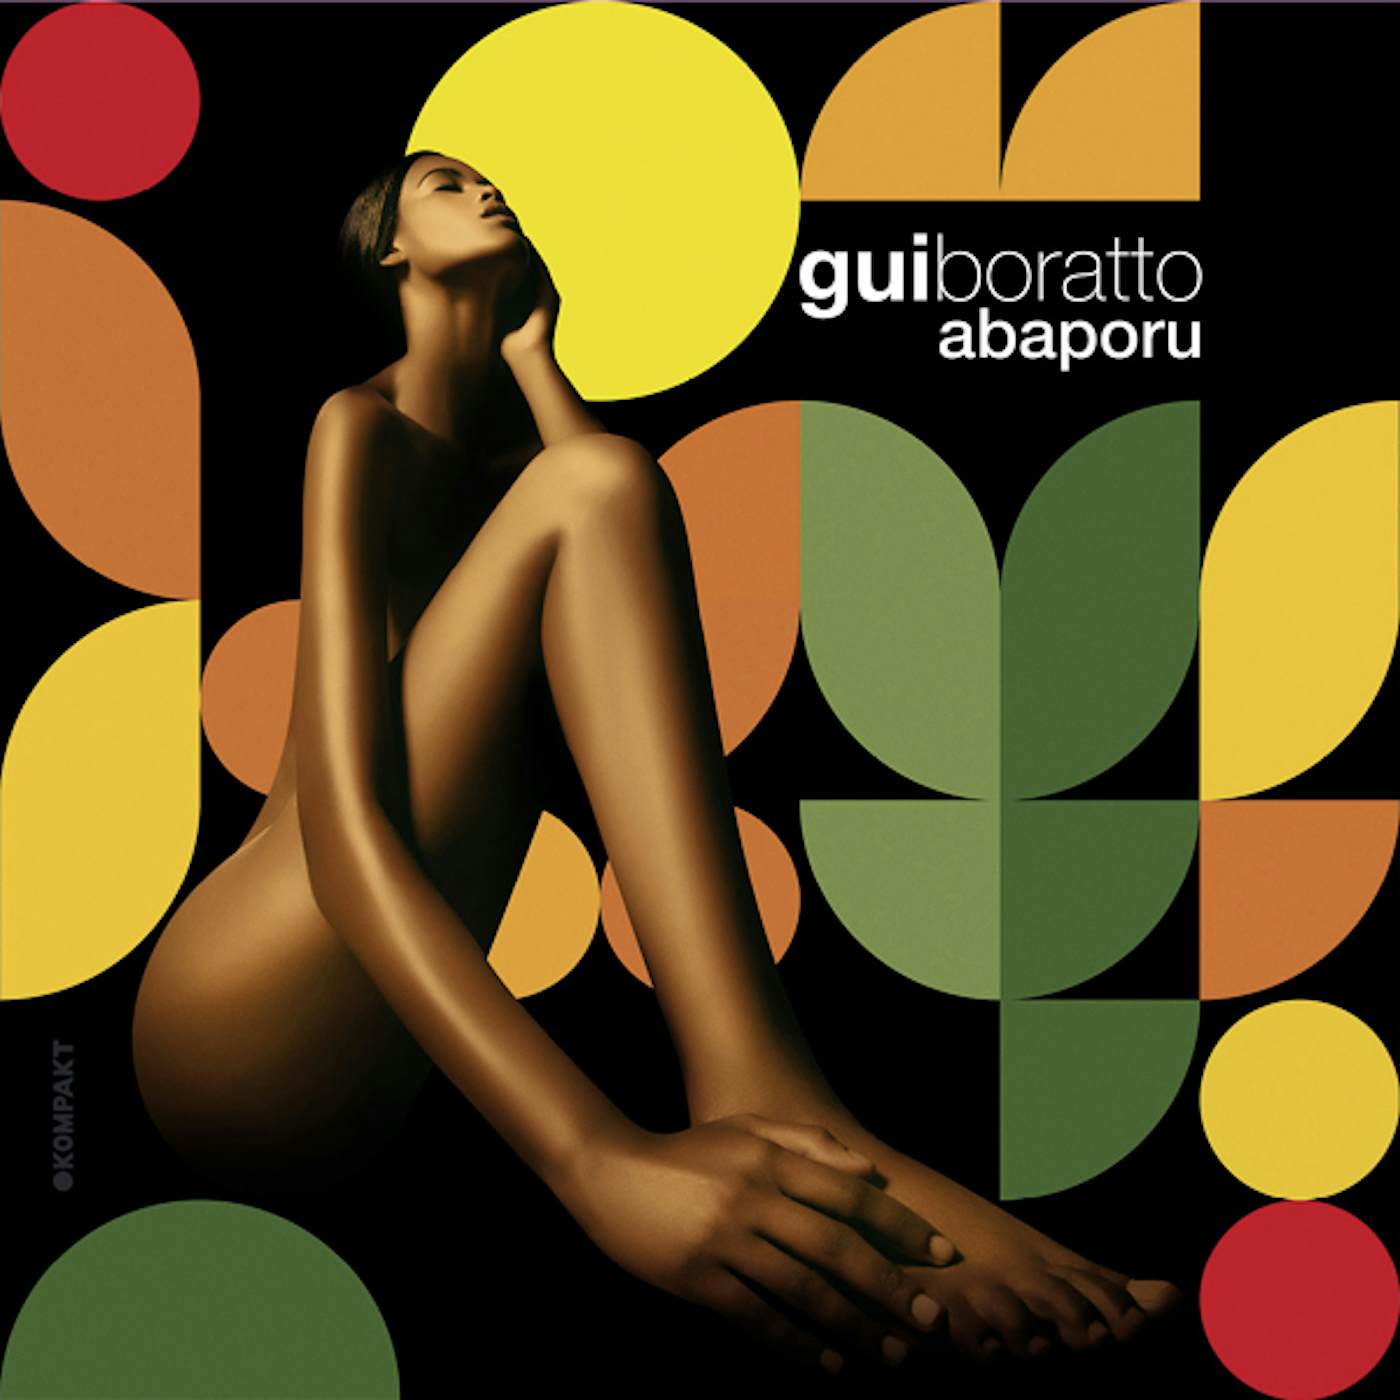 Gui Boratto ABAPORU Vinyl Record - w/CD